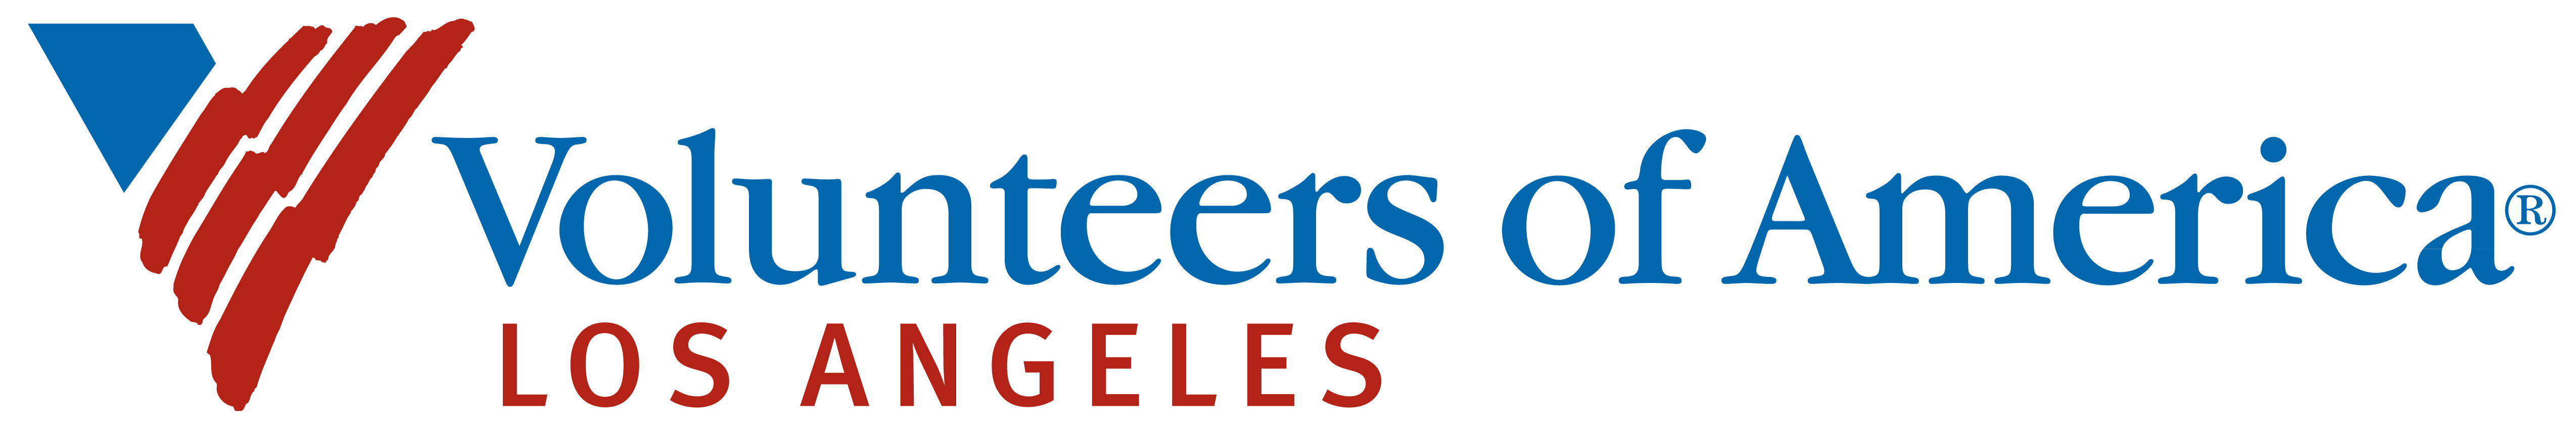 Volunteers of America Los Angeles